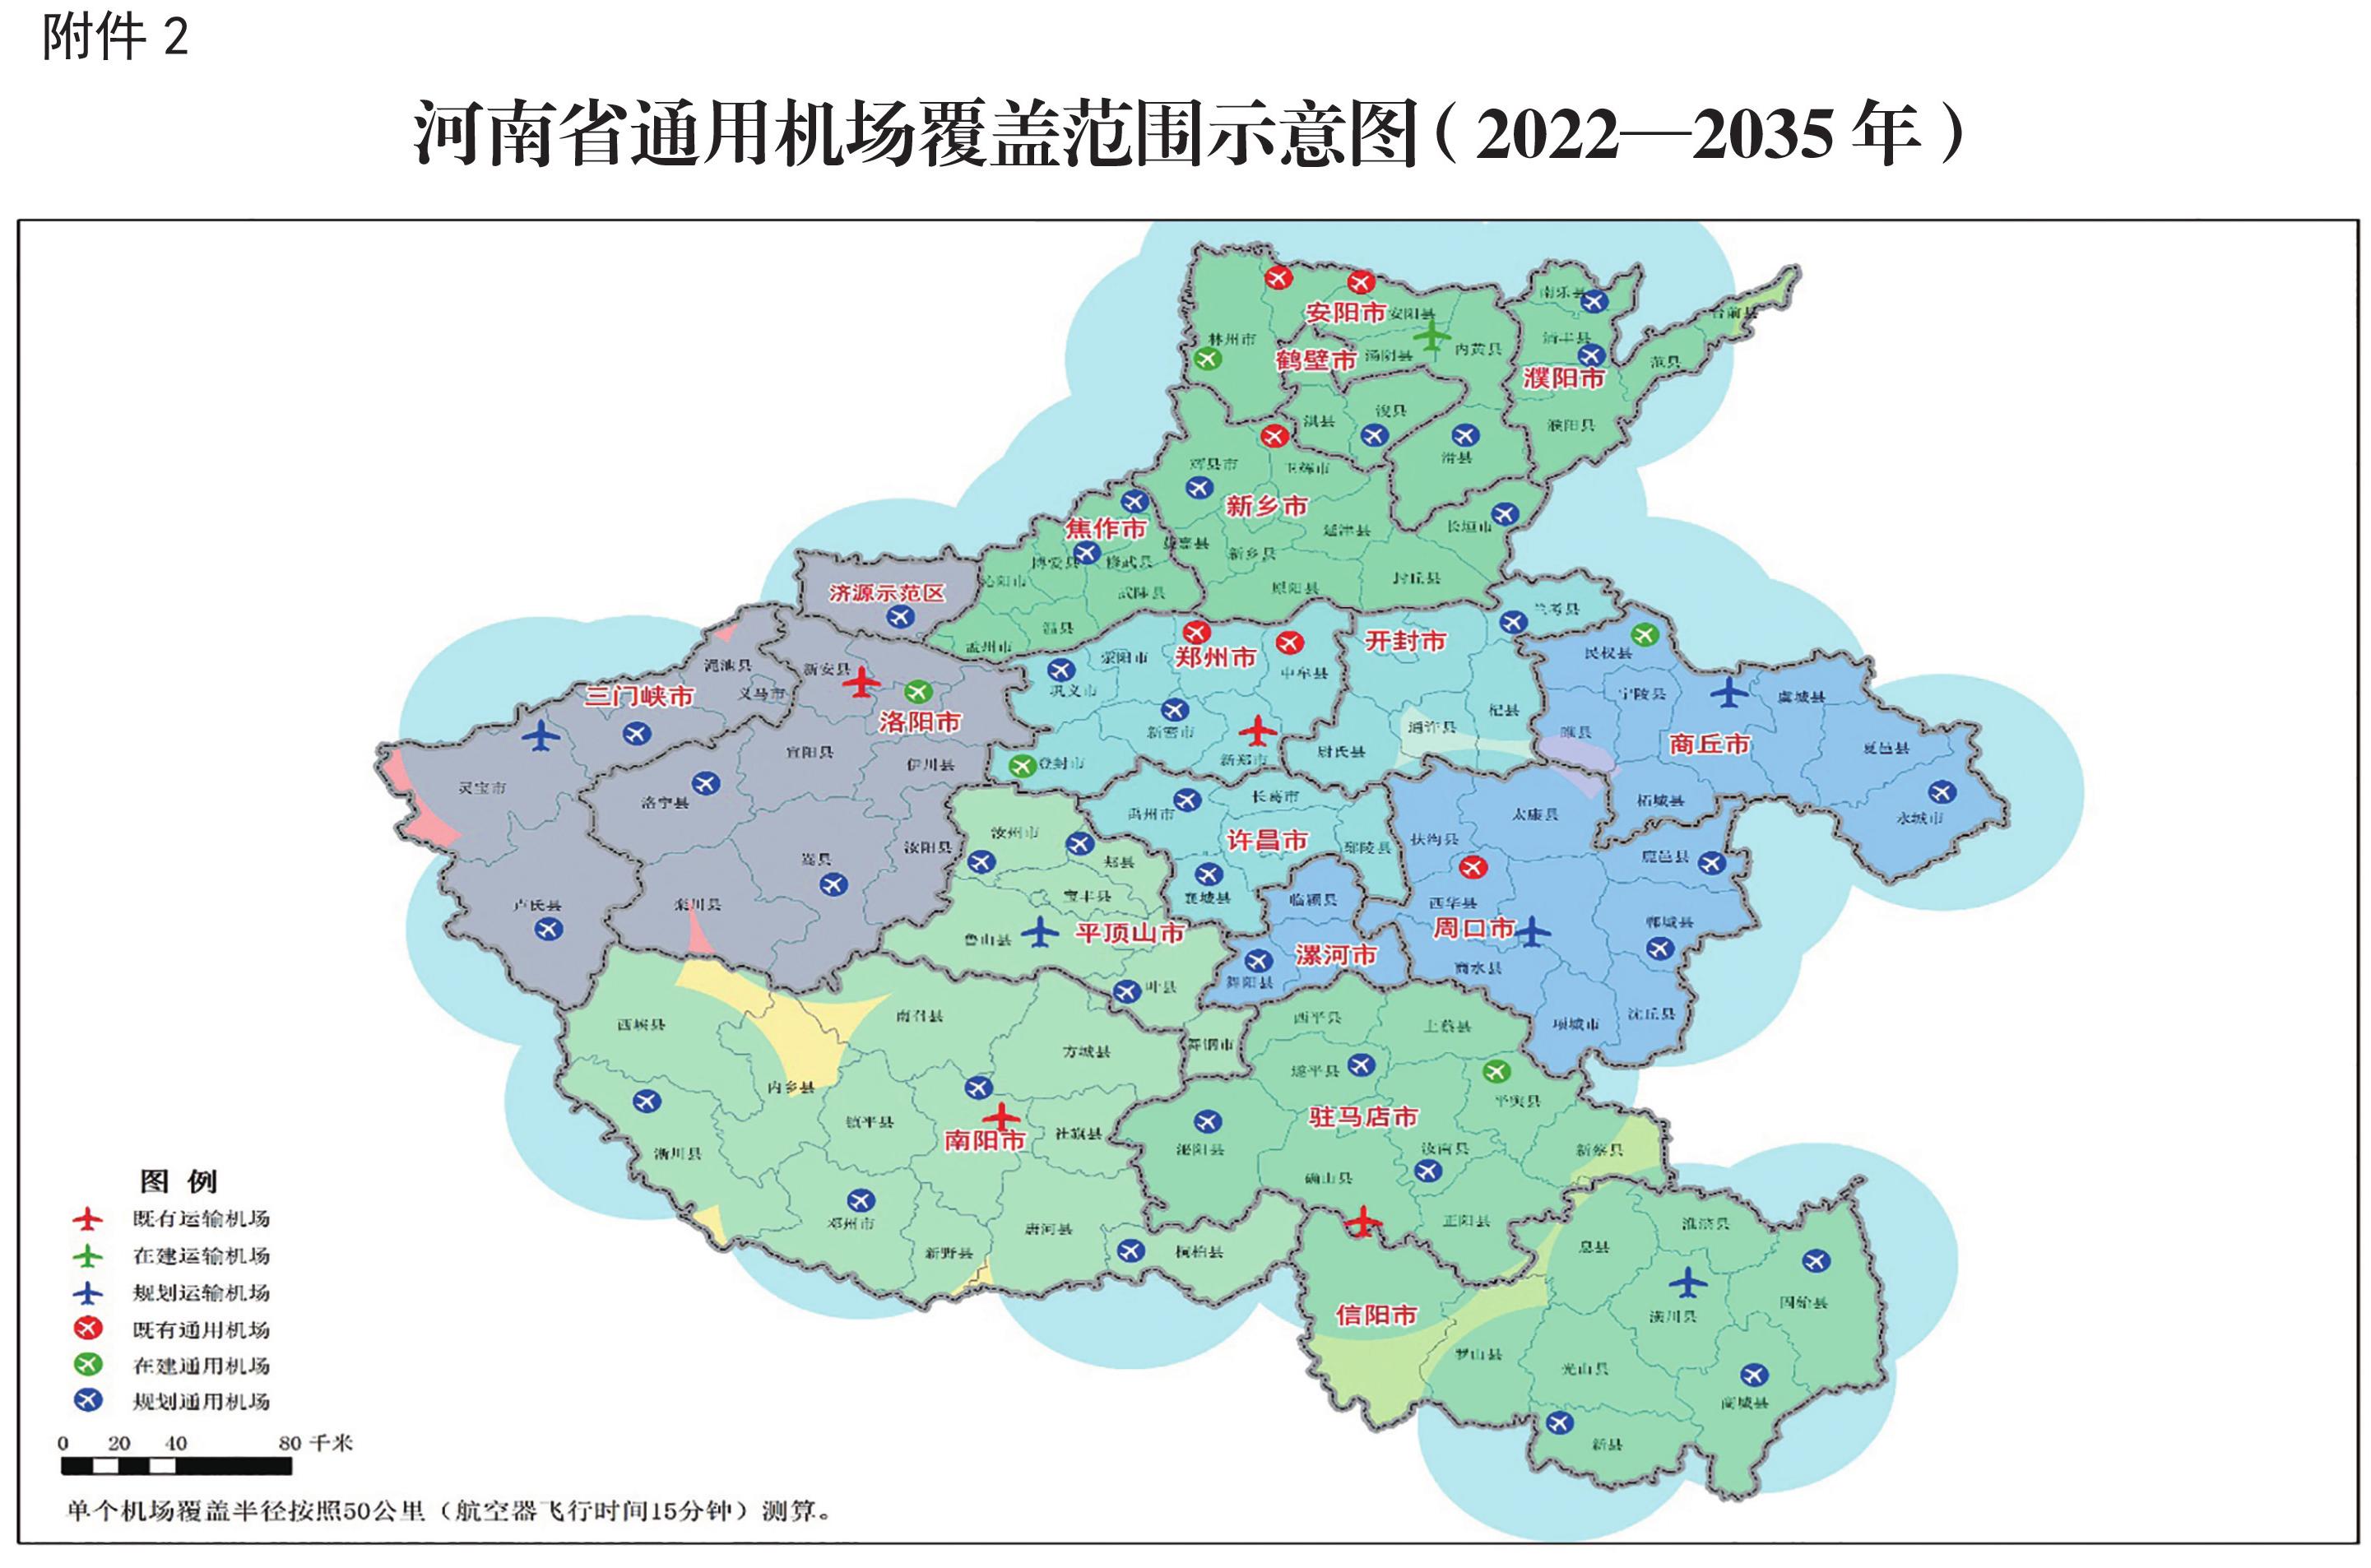 河南省通用机场中长期布局规划20222035年和